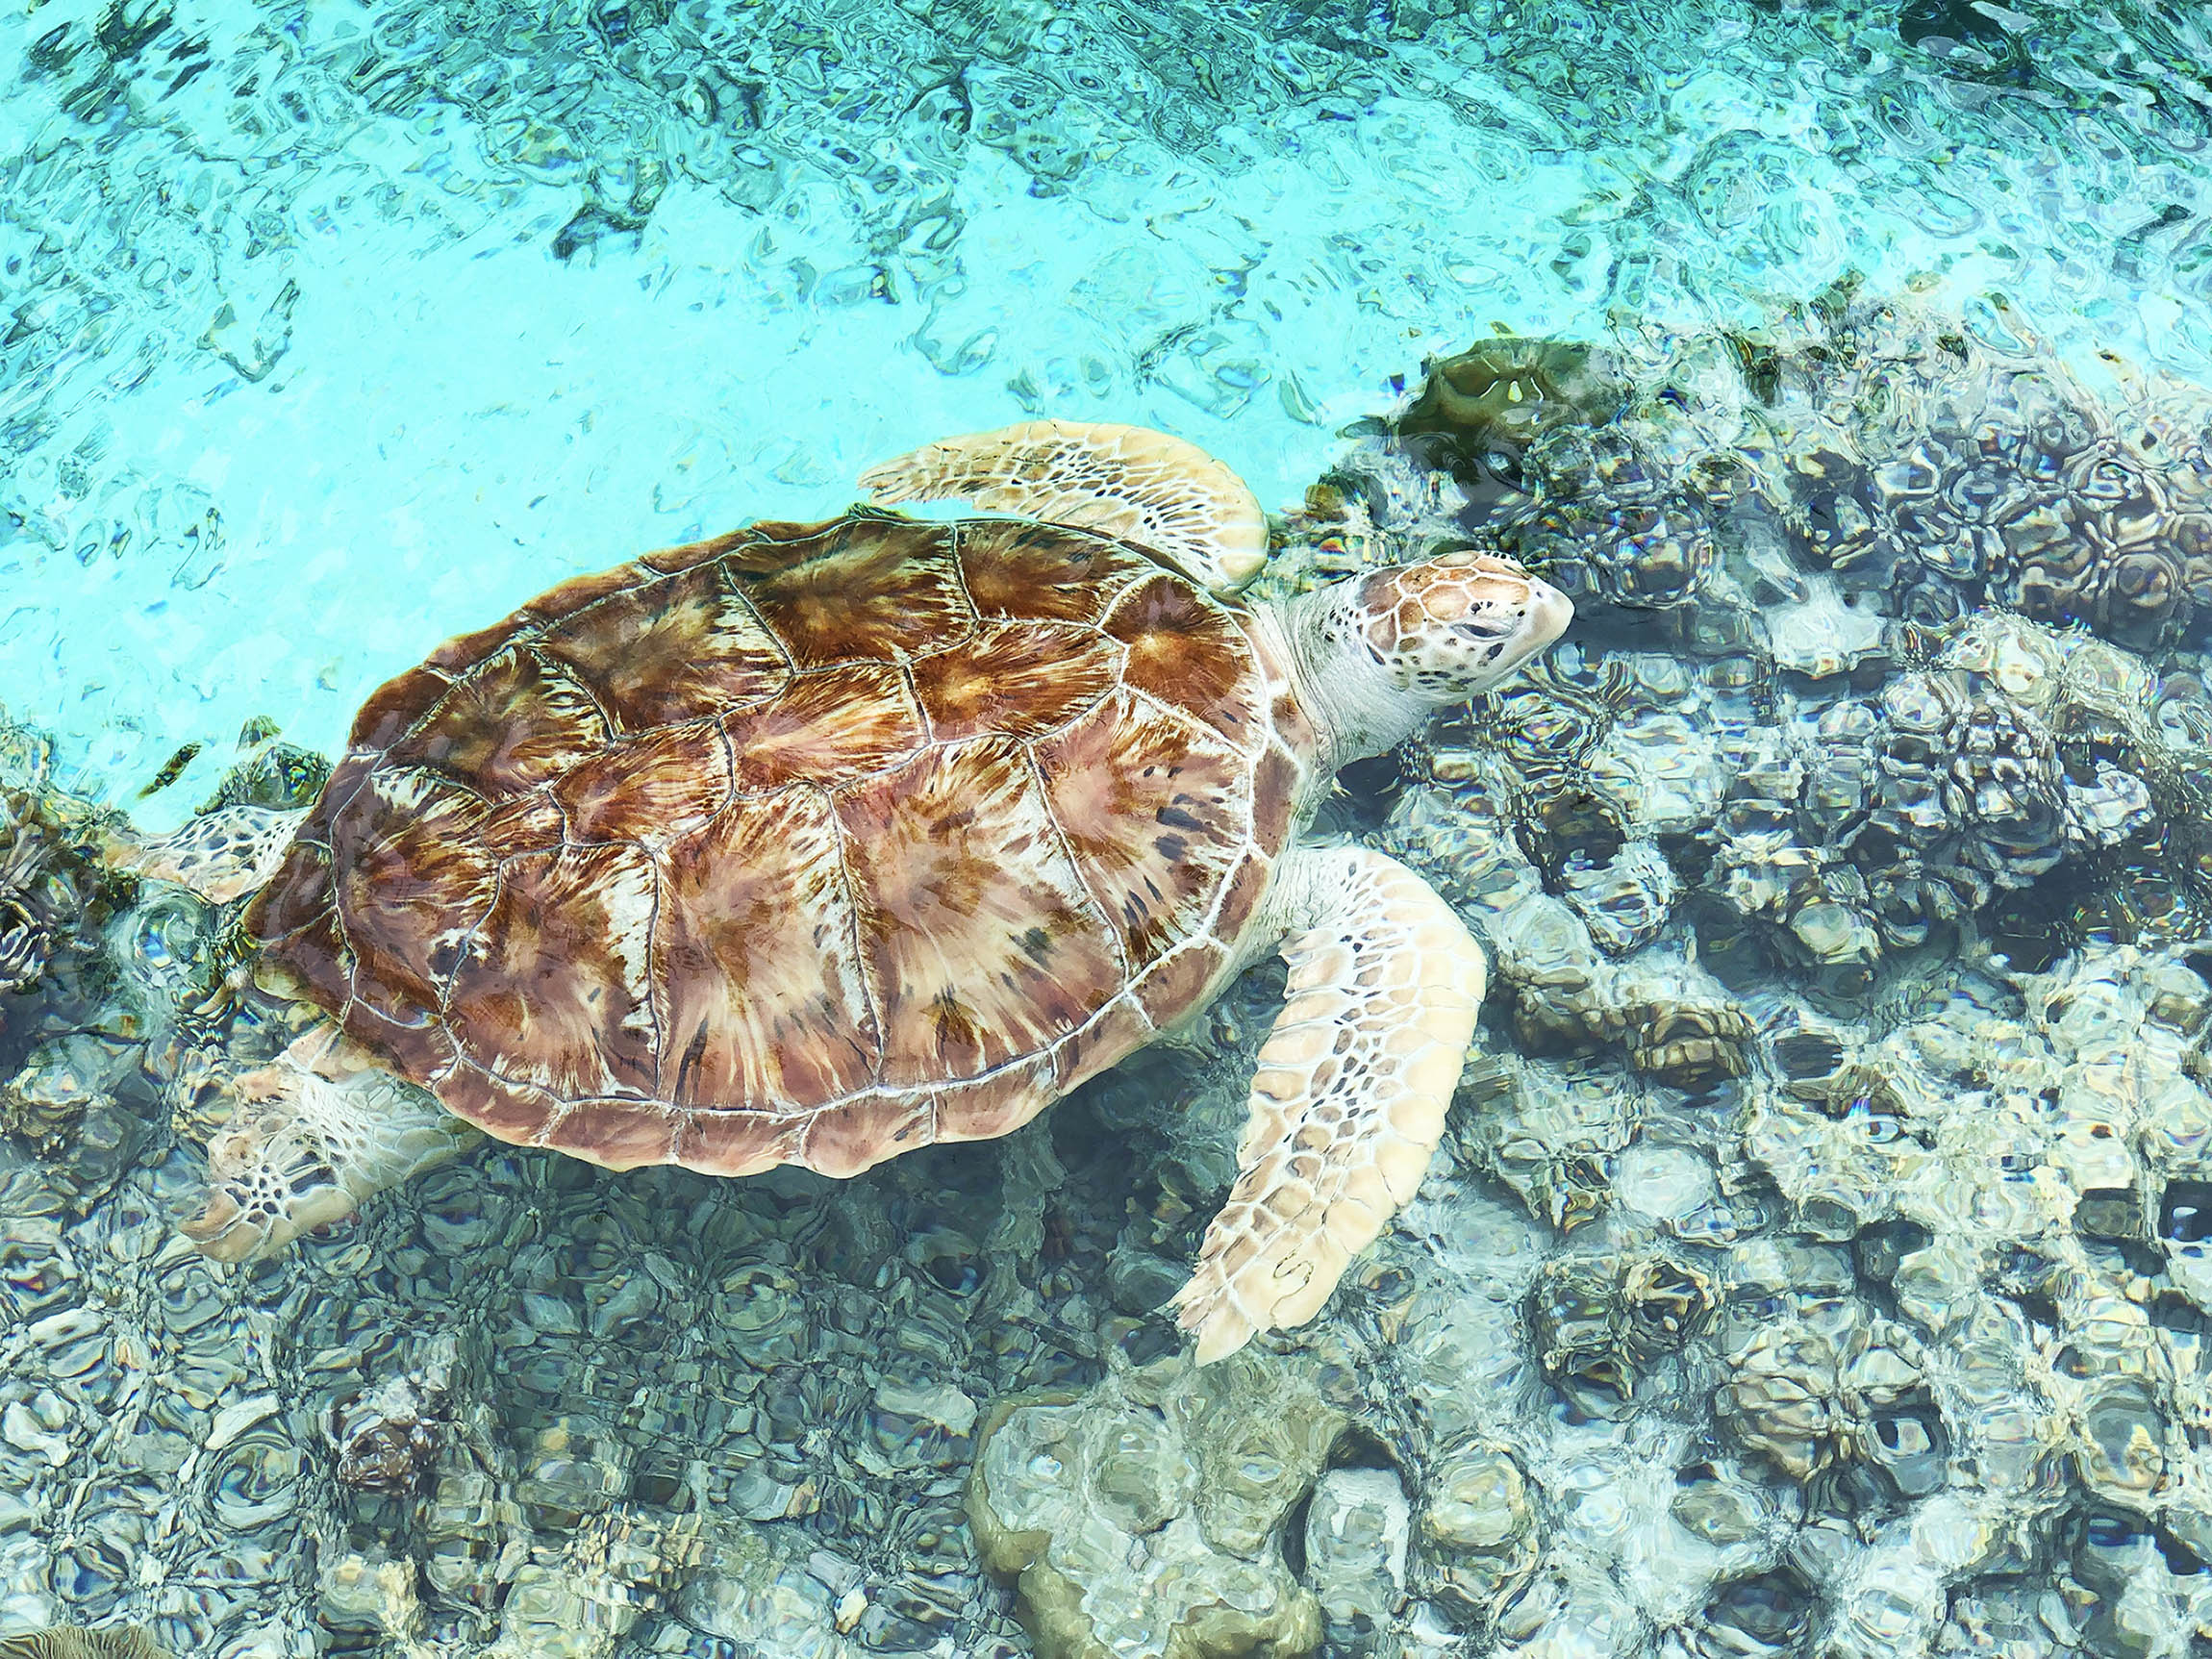 Turtle sanctuary at Le Méridien Bora Bora